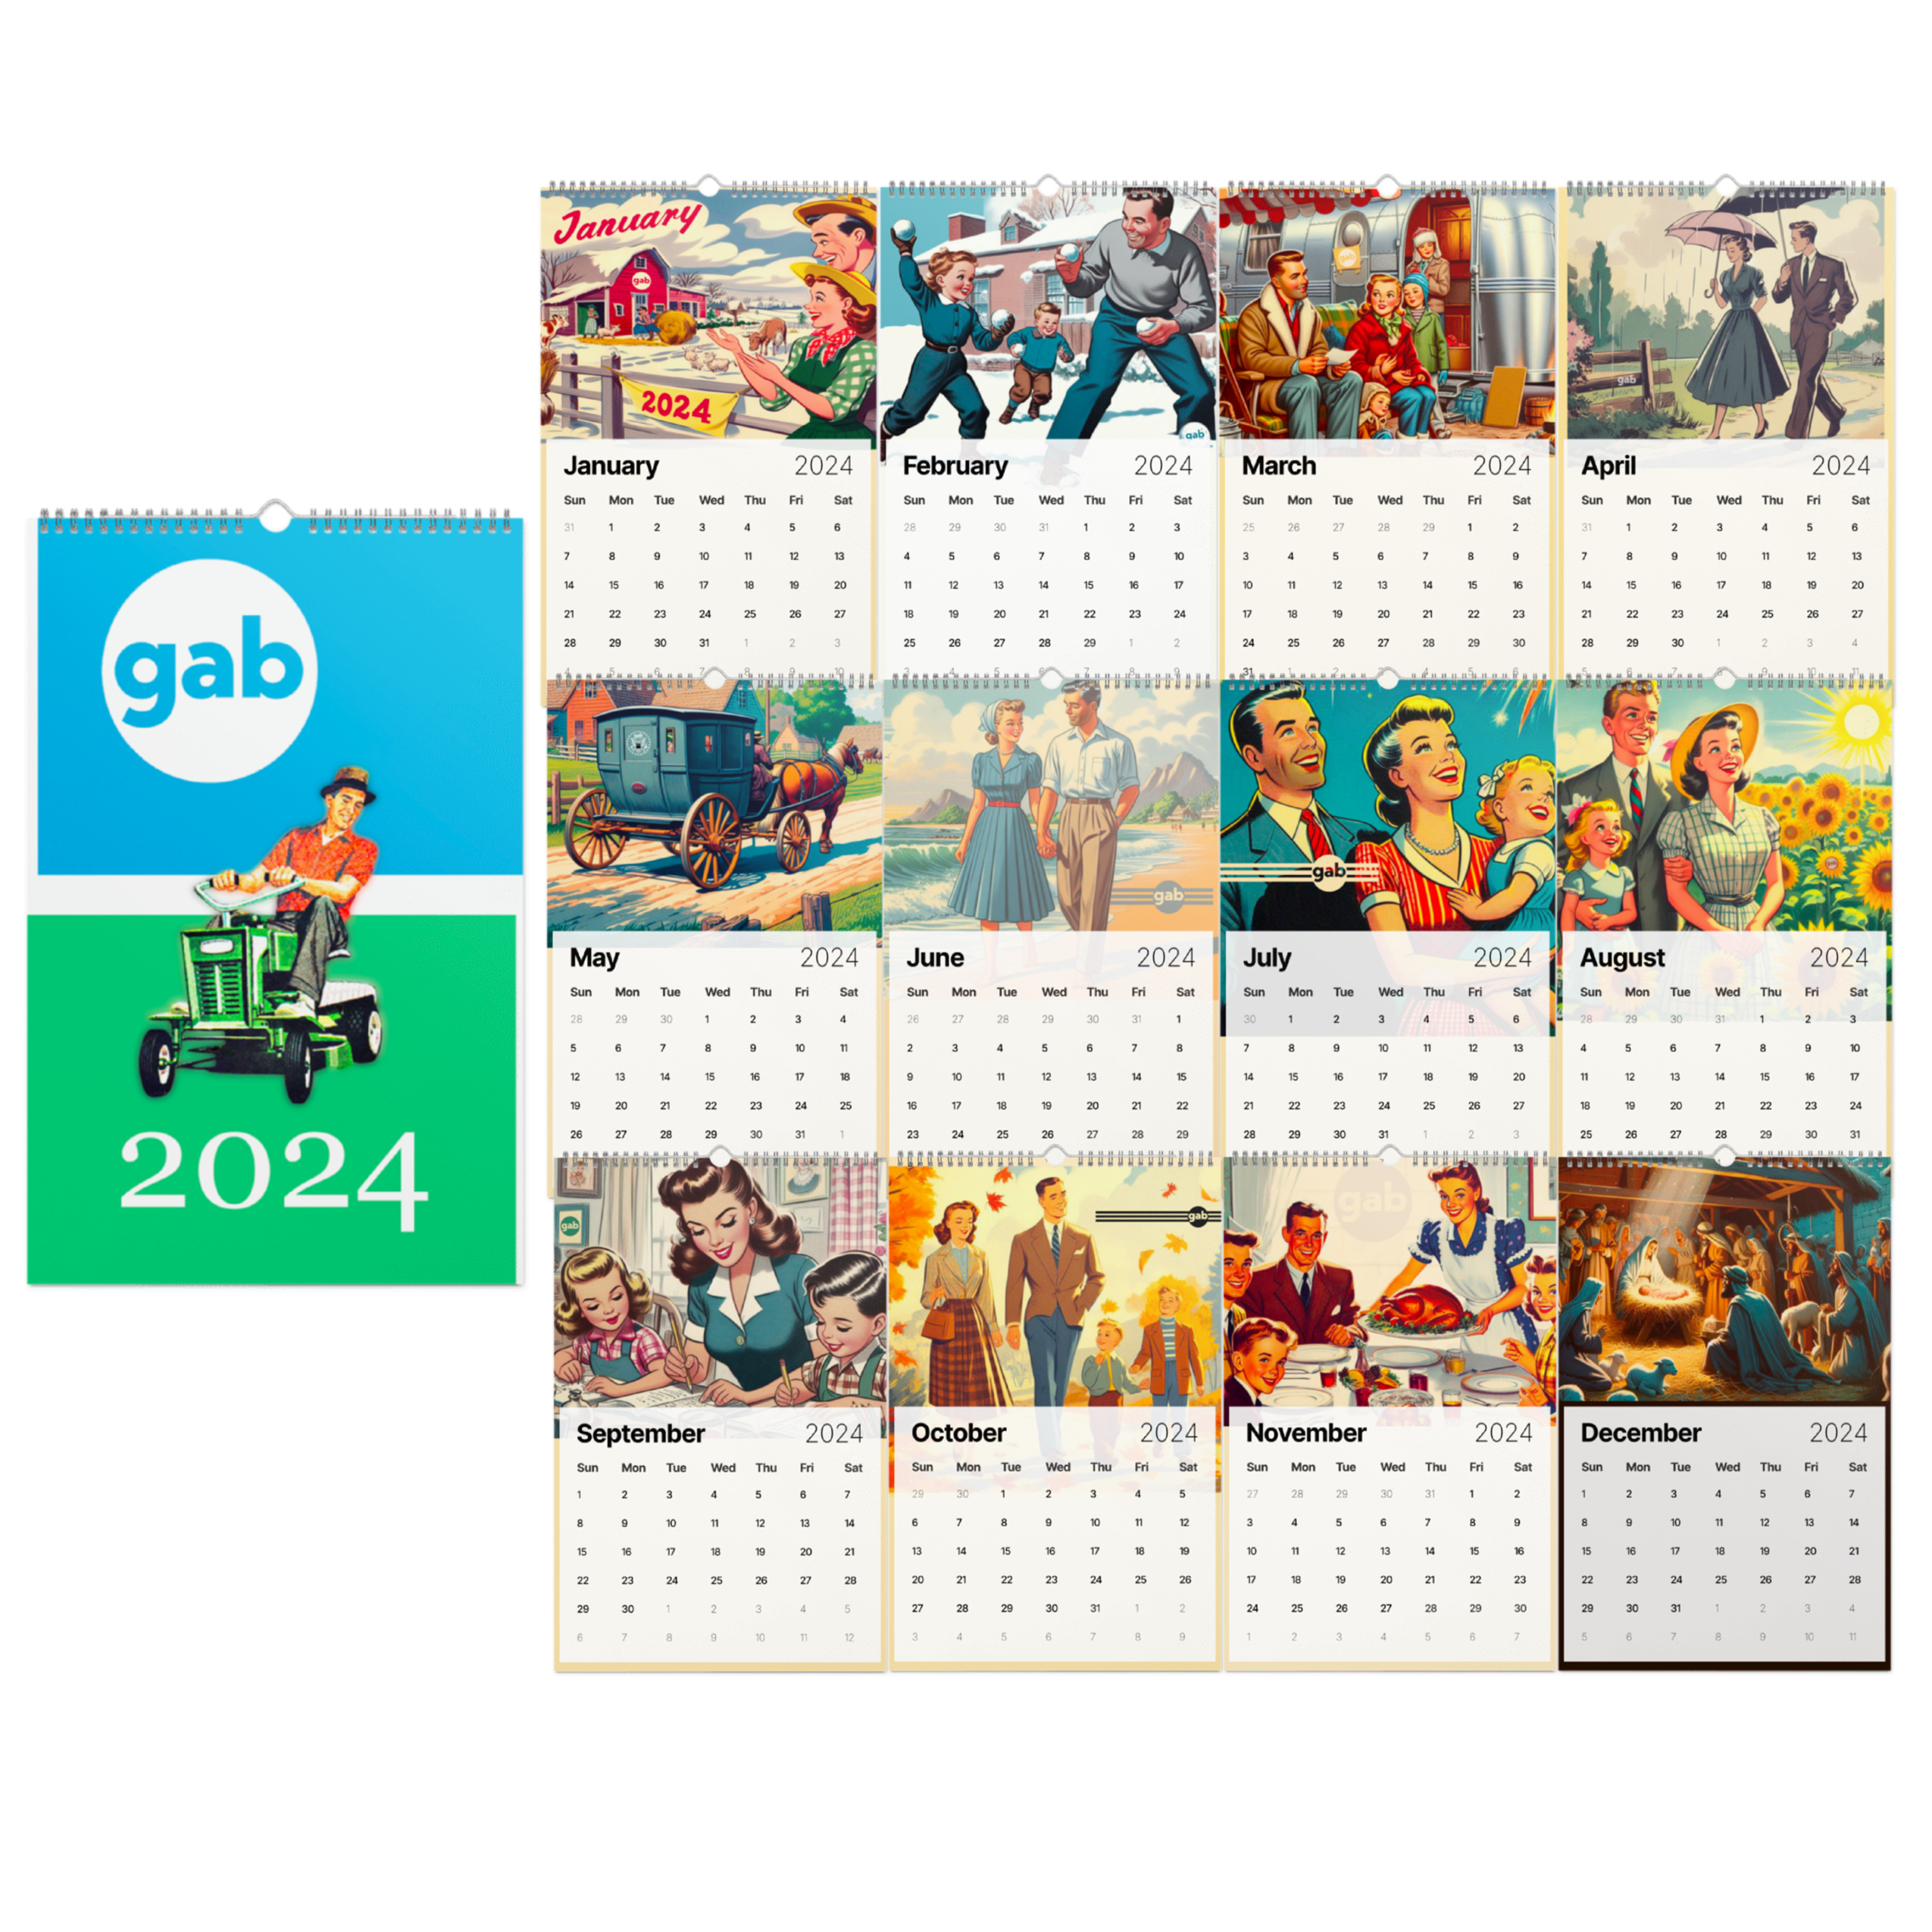 The Gab 2024 Wall Calendar